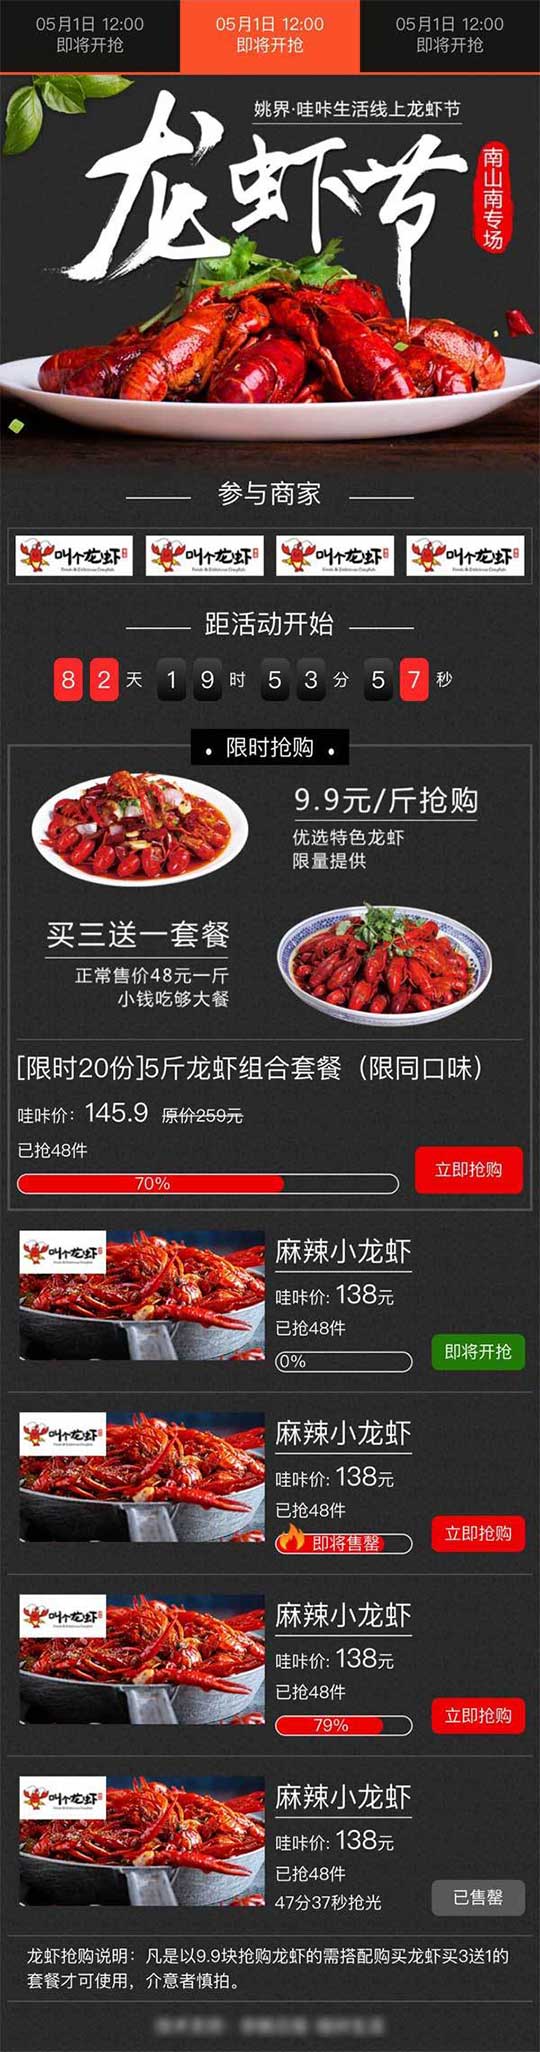 移动端商城龙虾节抢购活动页面手机模板